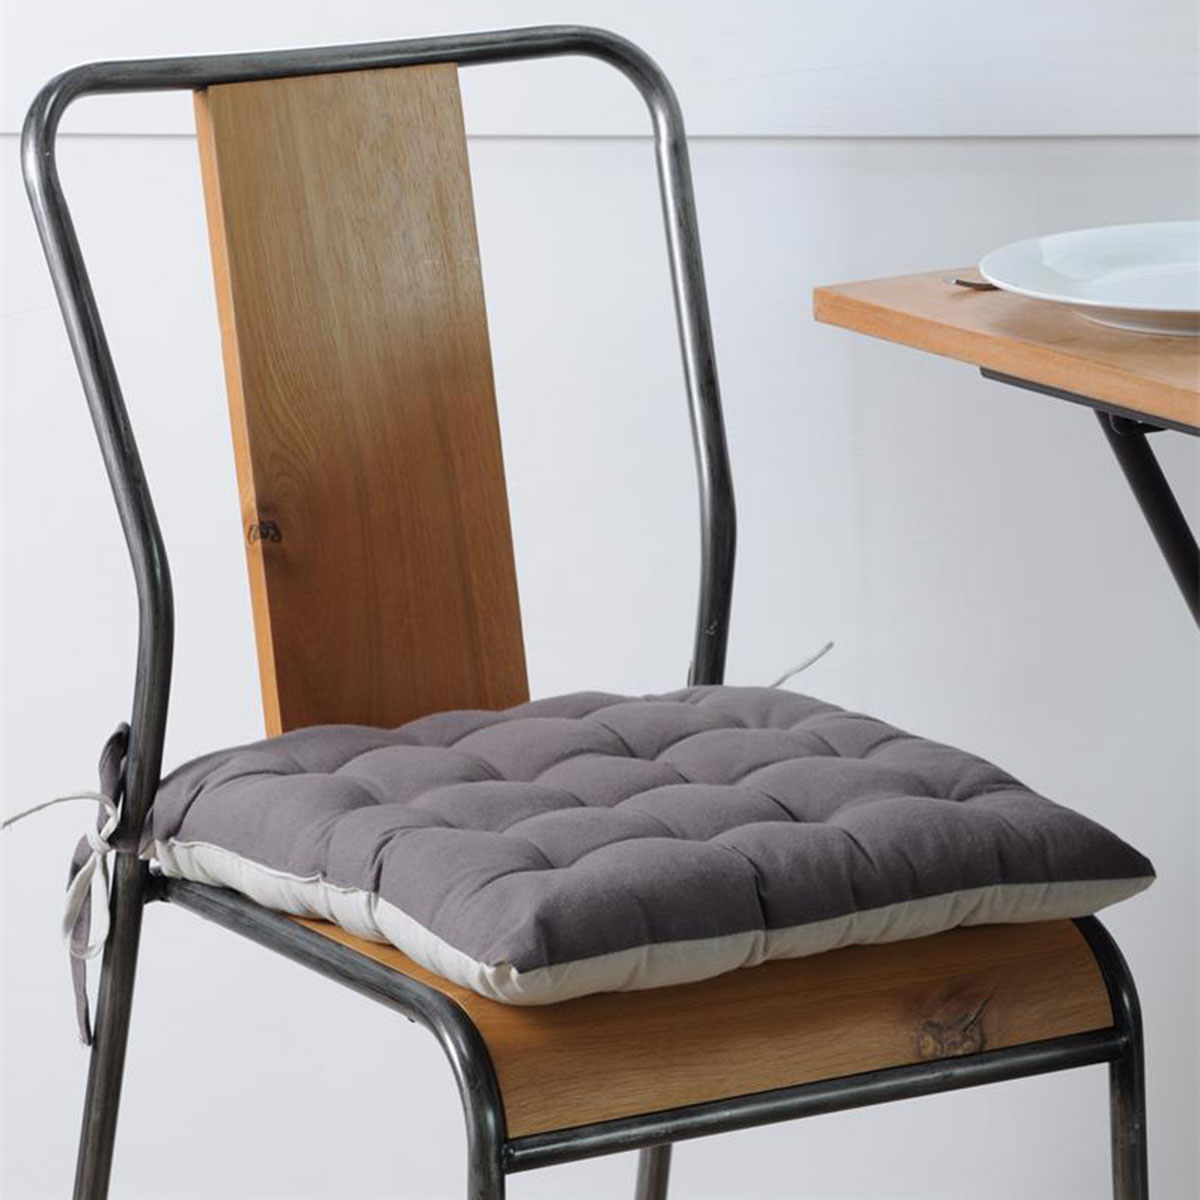 Coussin de chaise bicolore rversible en coton gris et perle